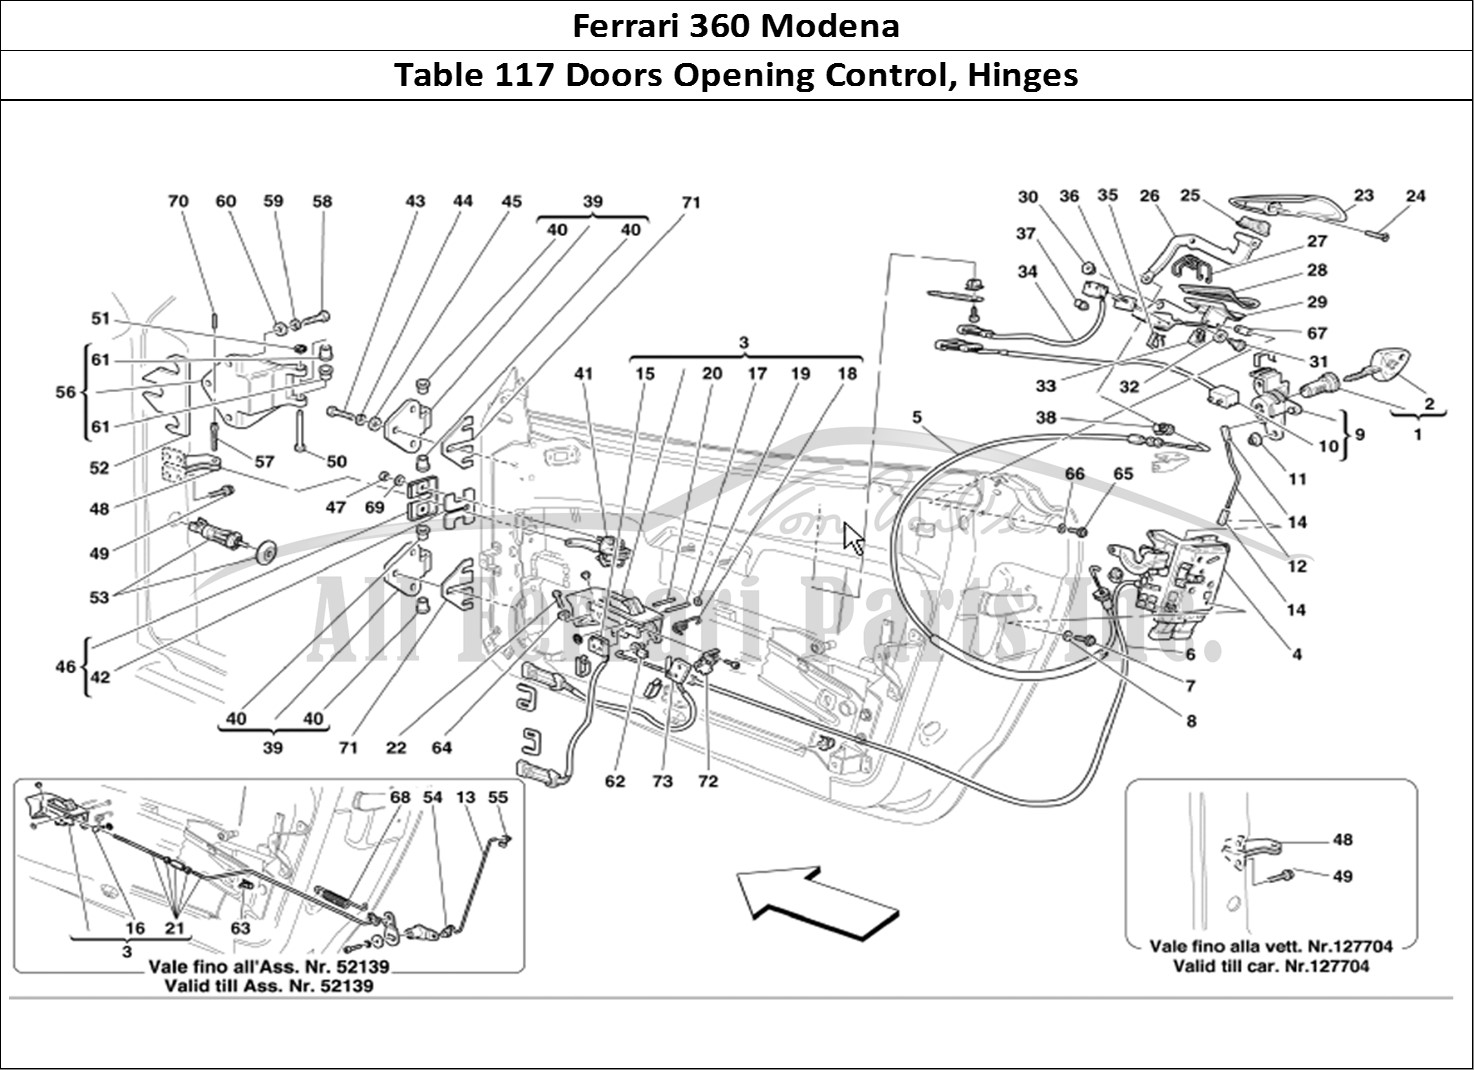 Ferrari Parts Ferrari 360 Modena Page 117 Doors Opening Control and